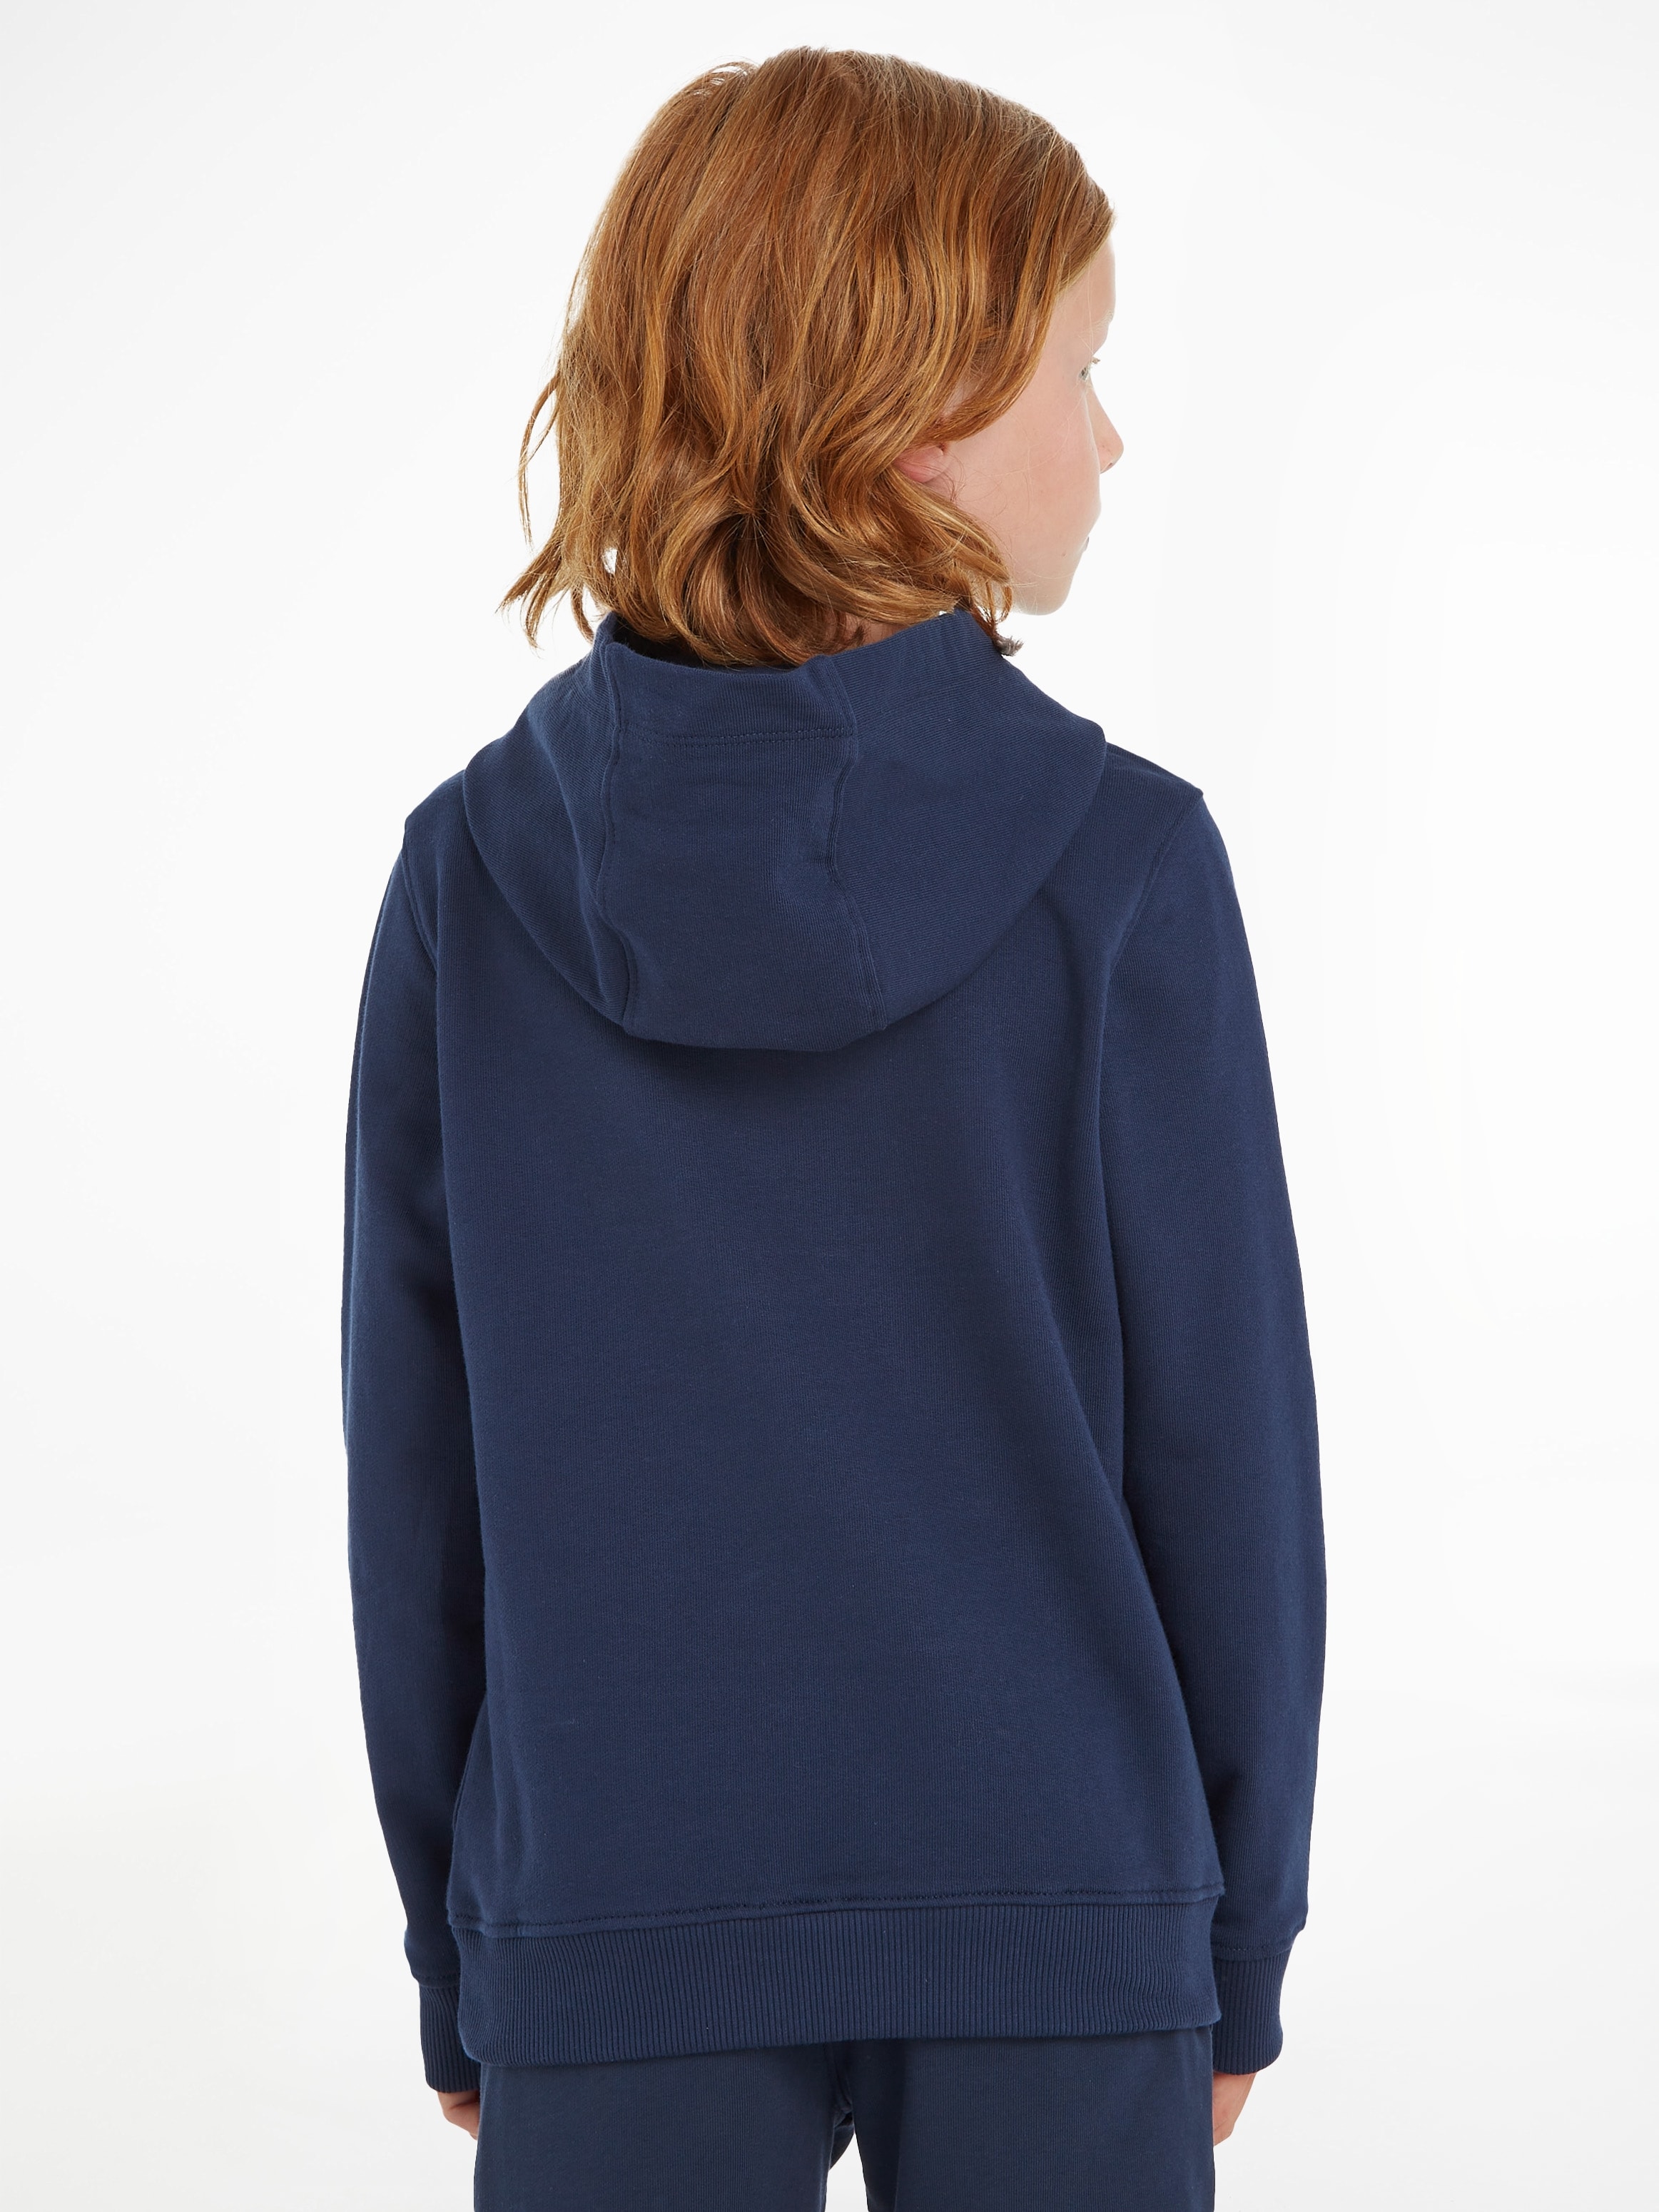 MiniMe,für Hilfiger und Tommy online bestellen Kapuzensweatshirt Jungen Kinder Mädchen HOODIE«, Kids »ESSENTIAL Junior